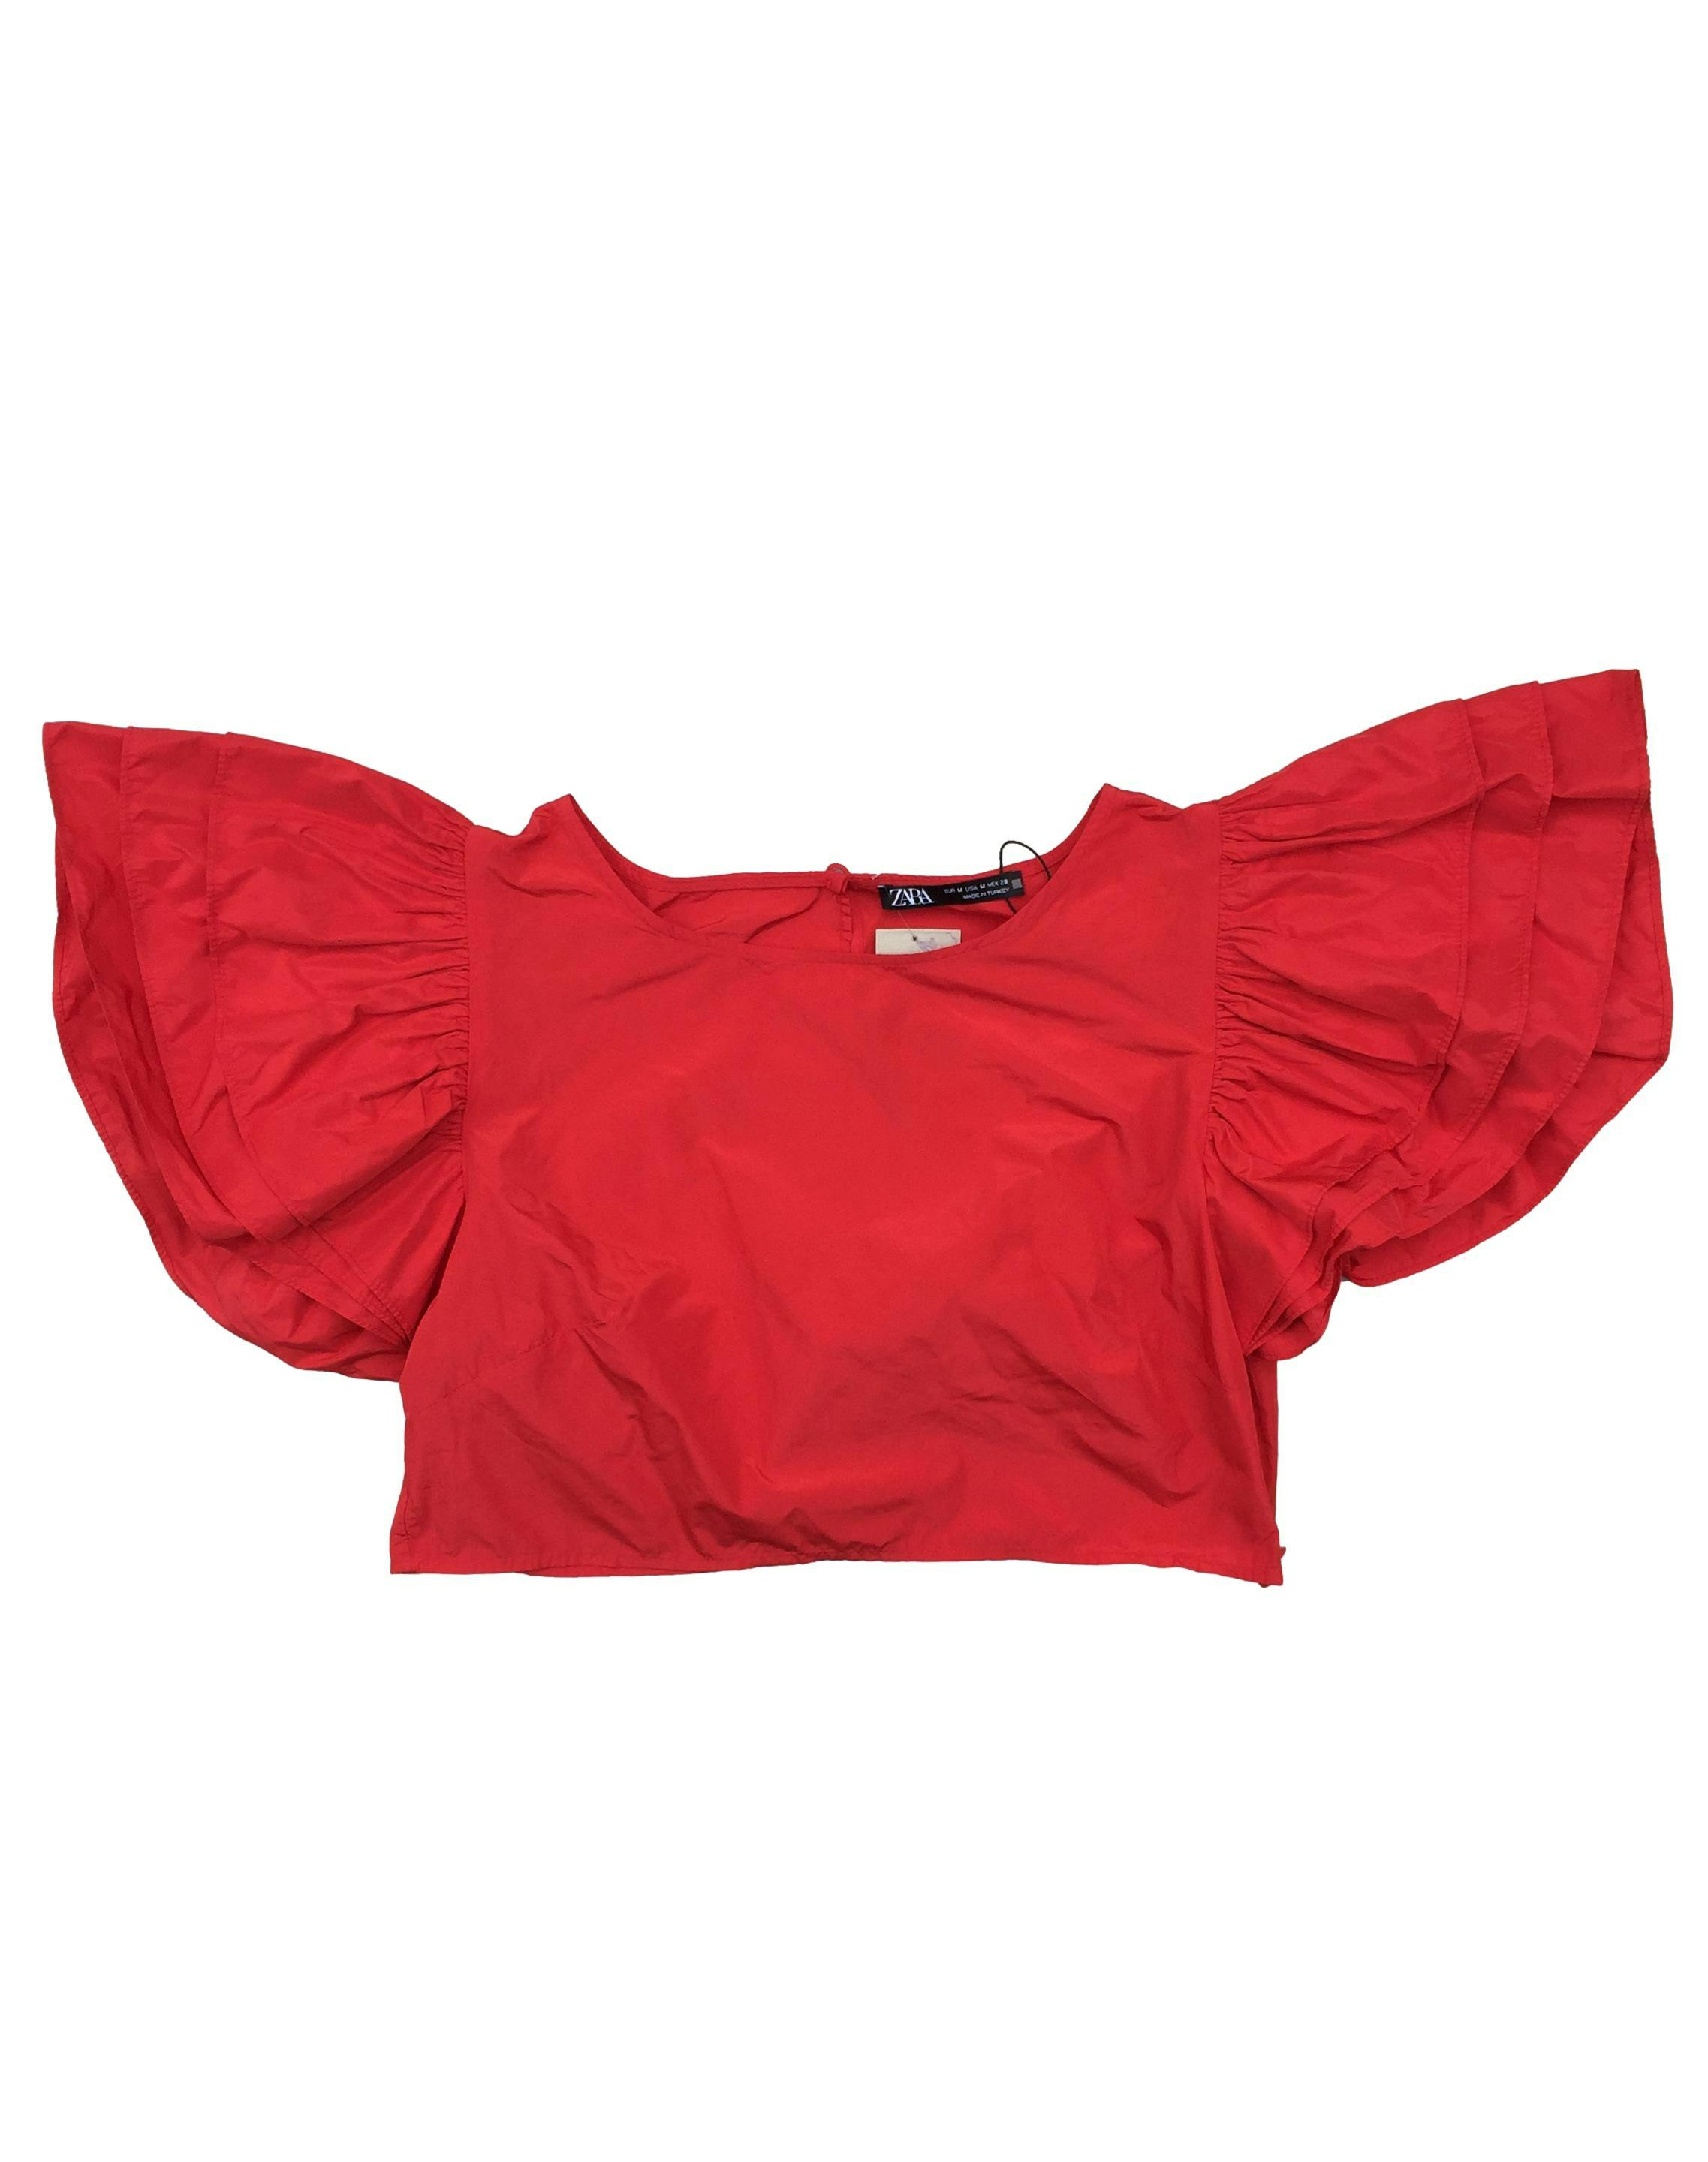 Blusa Zara roja, mangas abullonadas, cierre lateral invisible. Nuevo, con etiqueta. Busto 88 cm, Largo 32 cm.